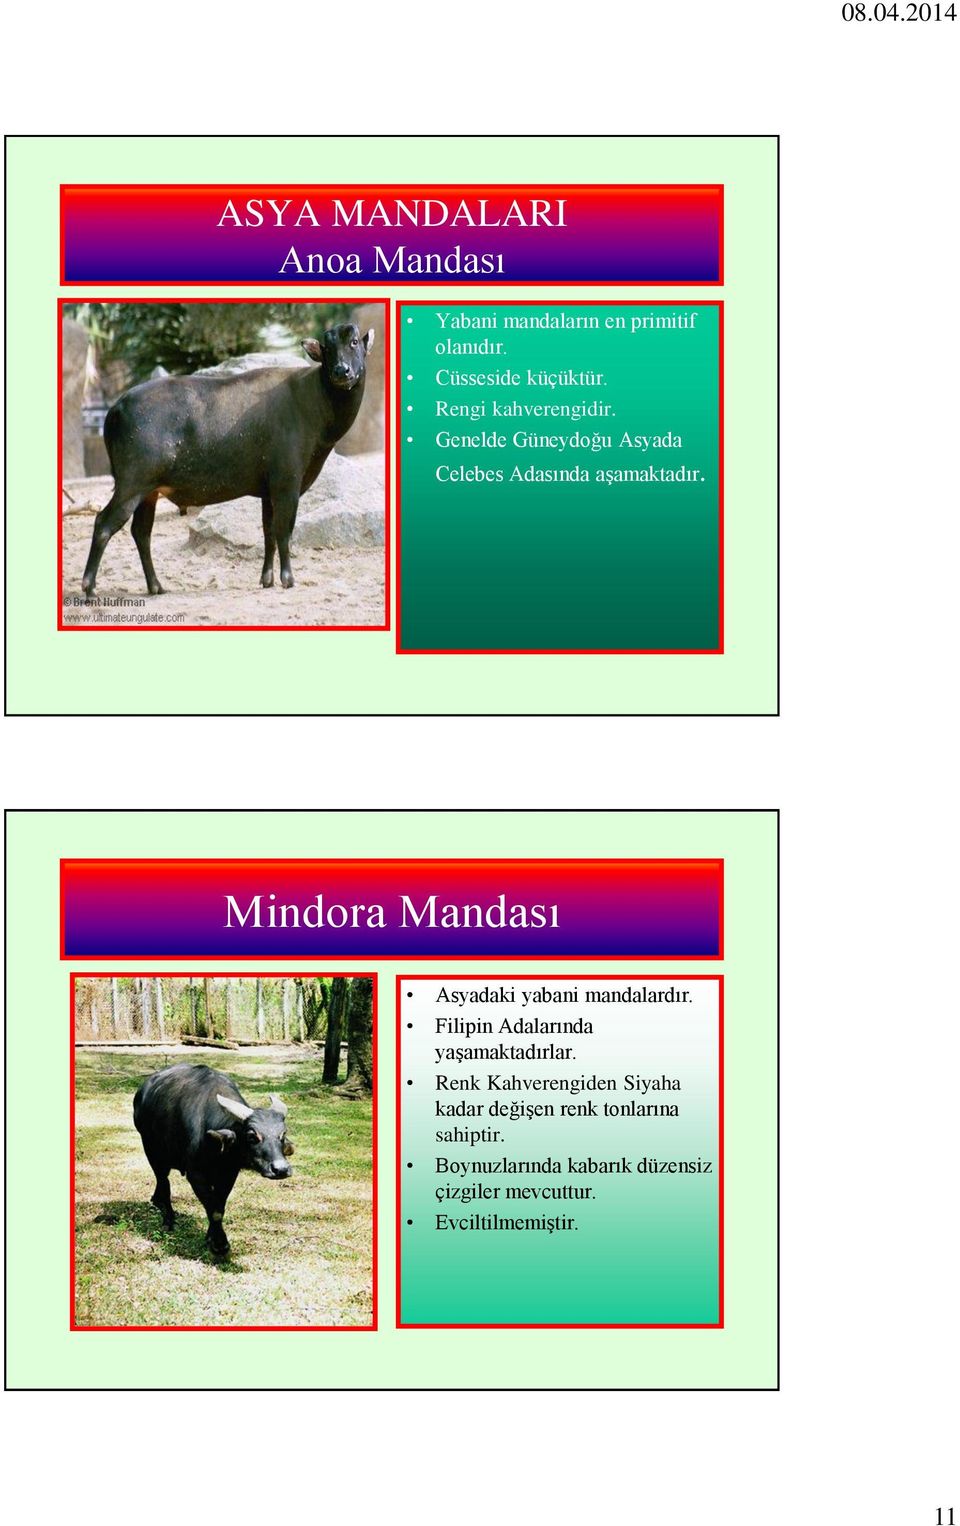 Mindora Mandası Asyadaki yabani mandalardır. Filipin Adalarında yaşamaktadırlar.